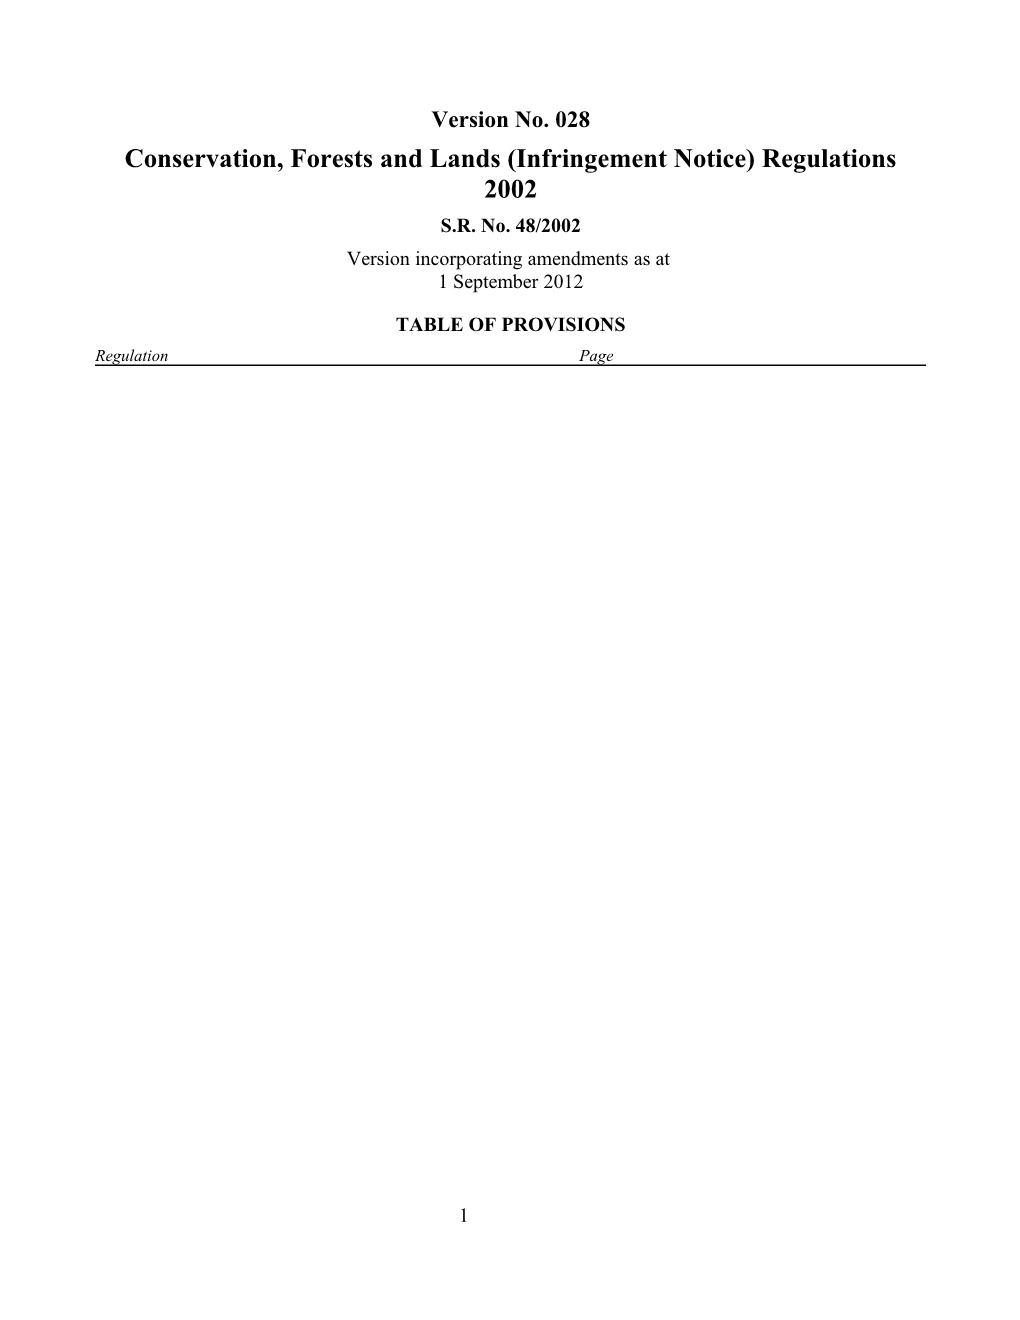 Conservation, Forests and Lands (Infringement Notice) Regulations 2002